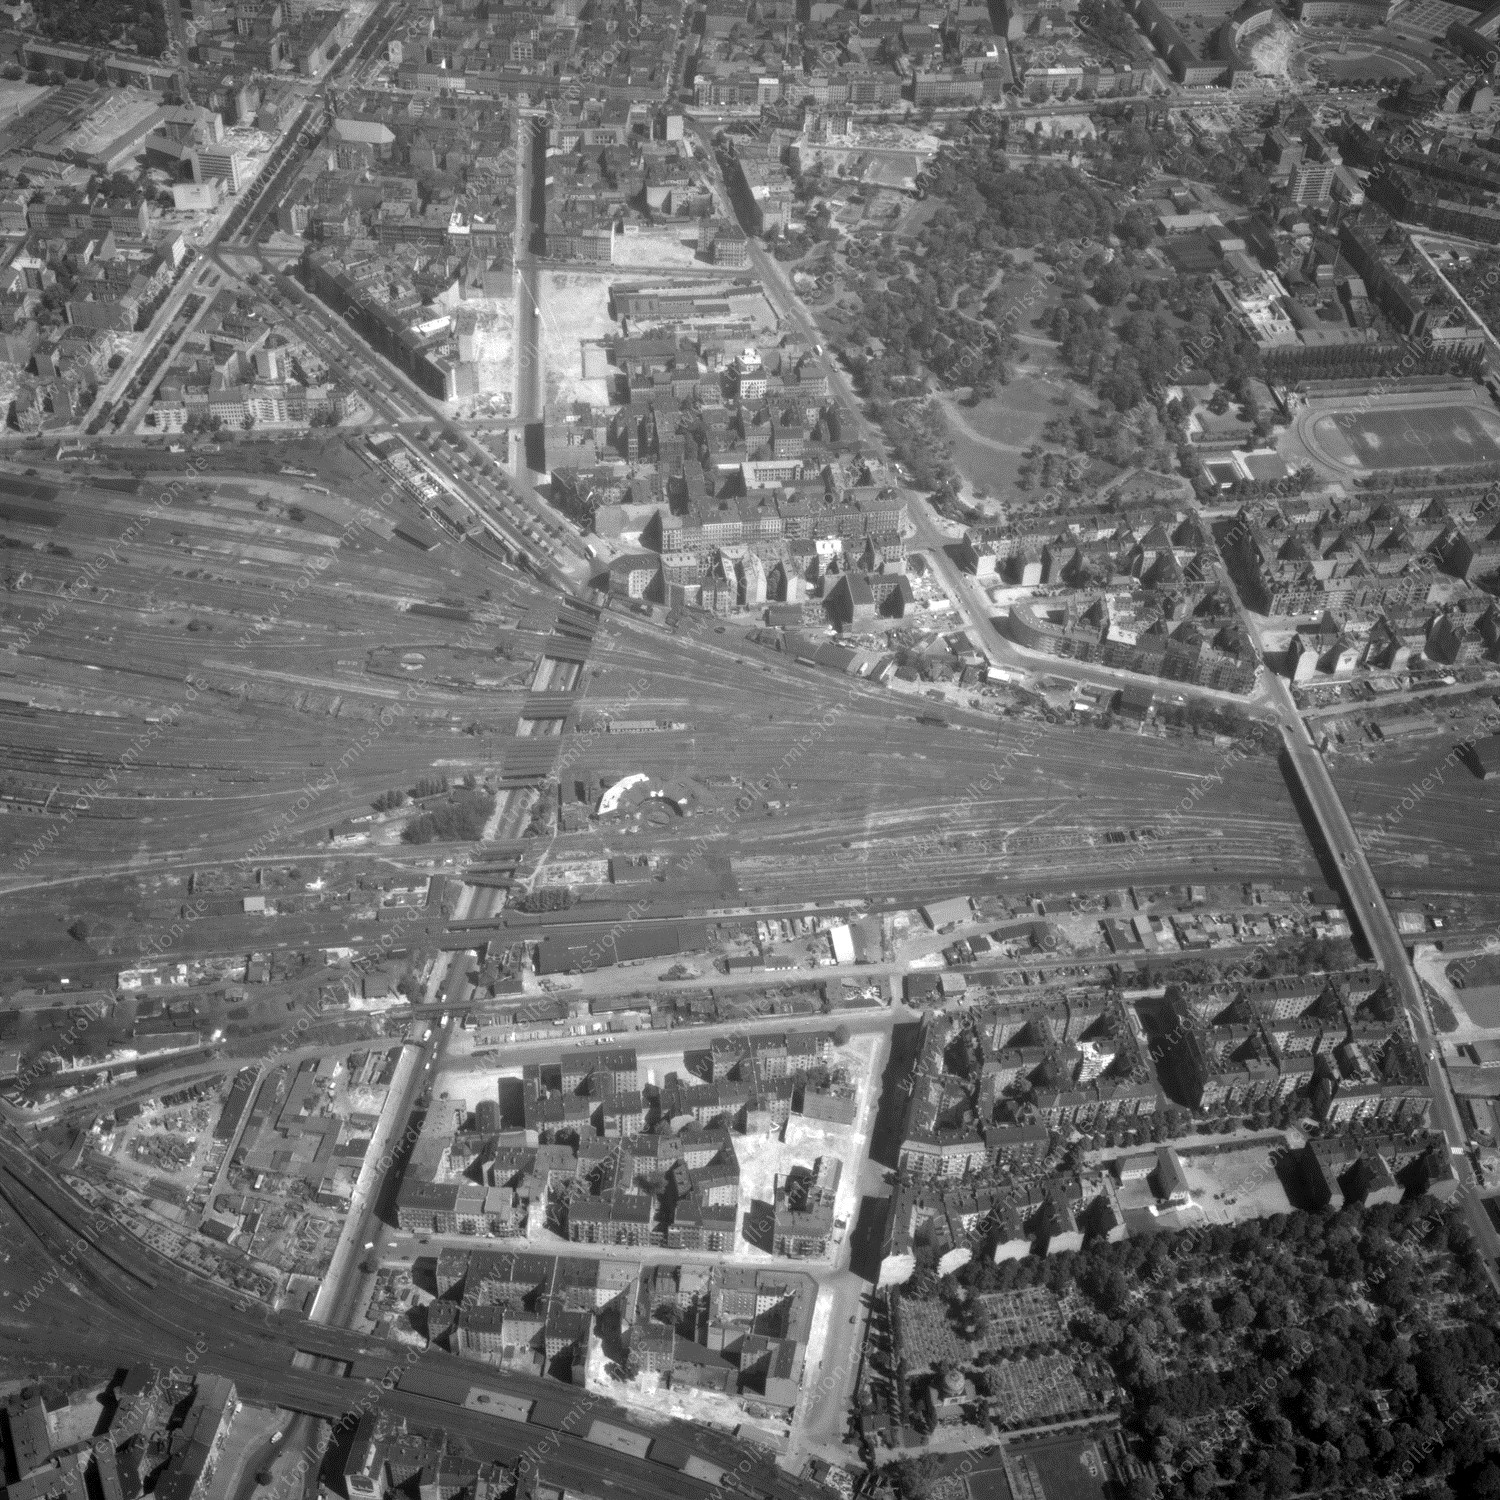 Alte Fotos und Luftbilder von Berlin - Luftbildaufnahme Nr. 03 - Historische Luftaufnahmen von West-Berlin aus dem Jahr 1954 - Flugstrecke Hotel